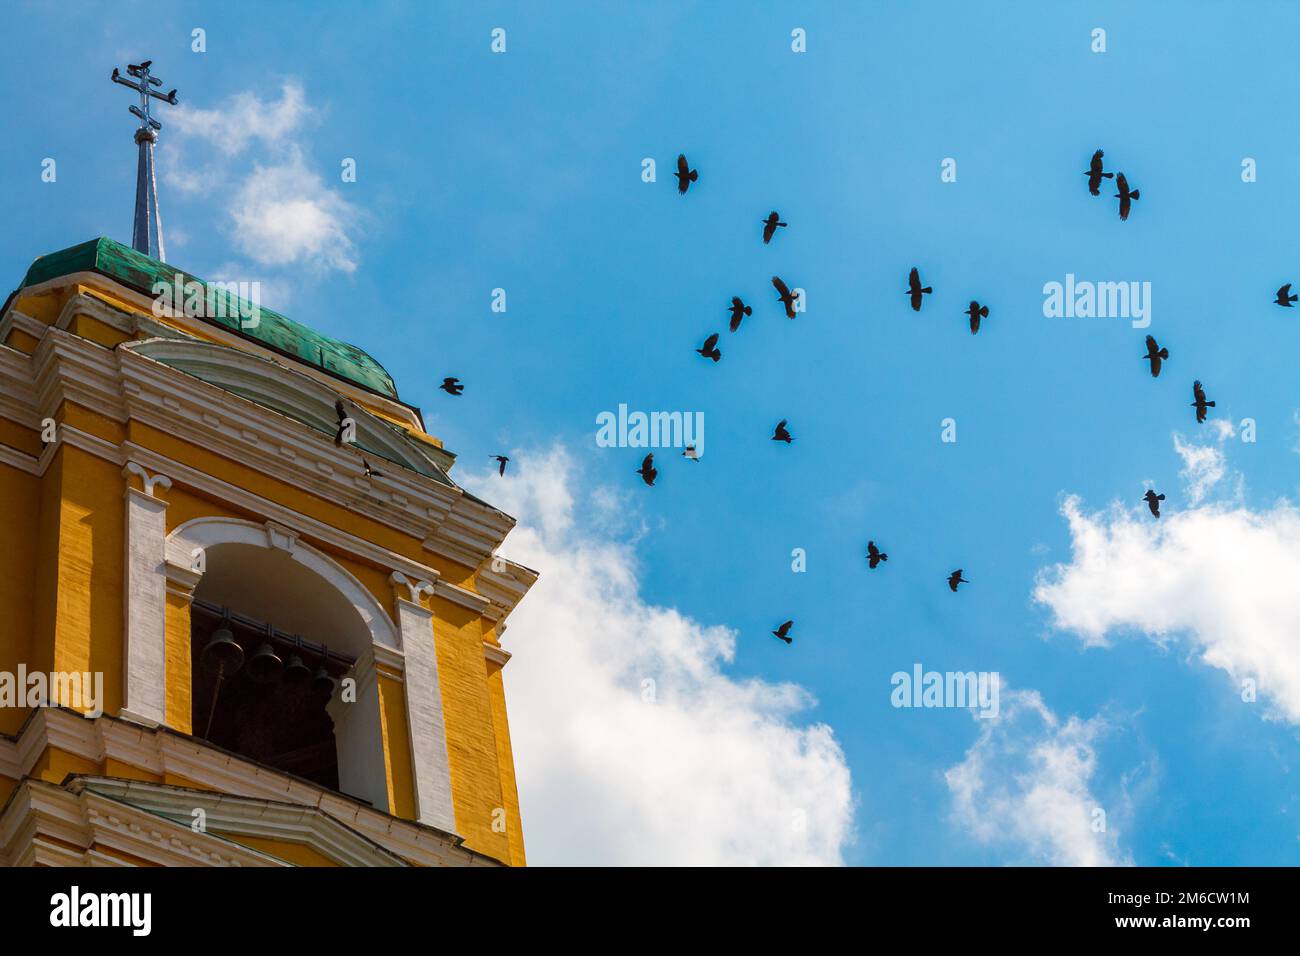 Turm des christlichen Tempels mit Glocken und einem Kreuz, in das viele schwarze Vögel gegen den blauen Himmel mit weißen Wolken fliegen Stockfoto